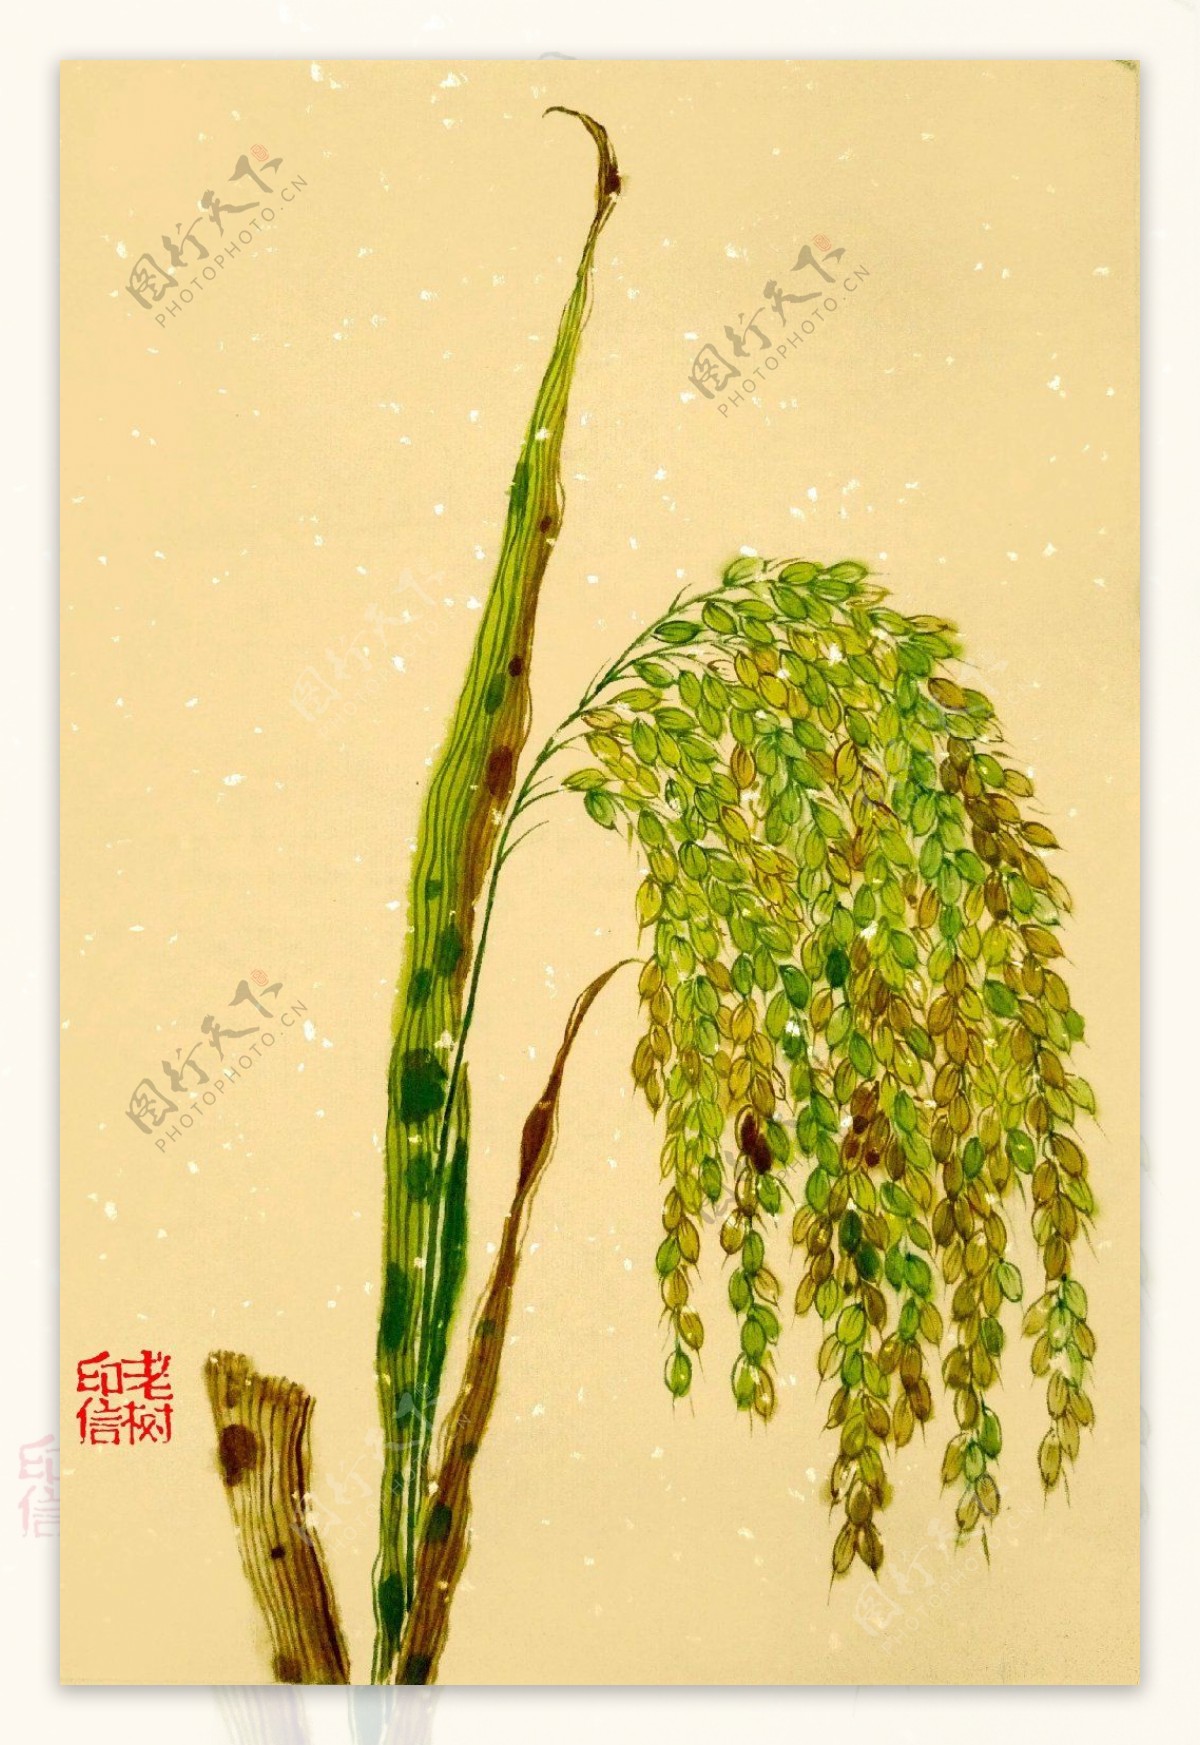 金黄色的稻穗背景图片